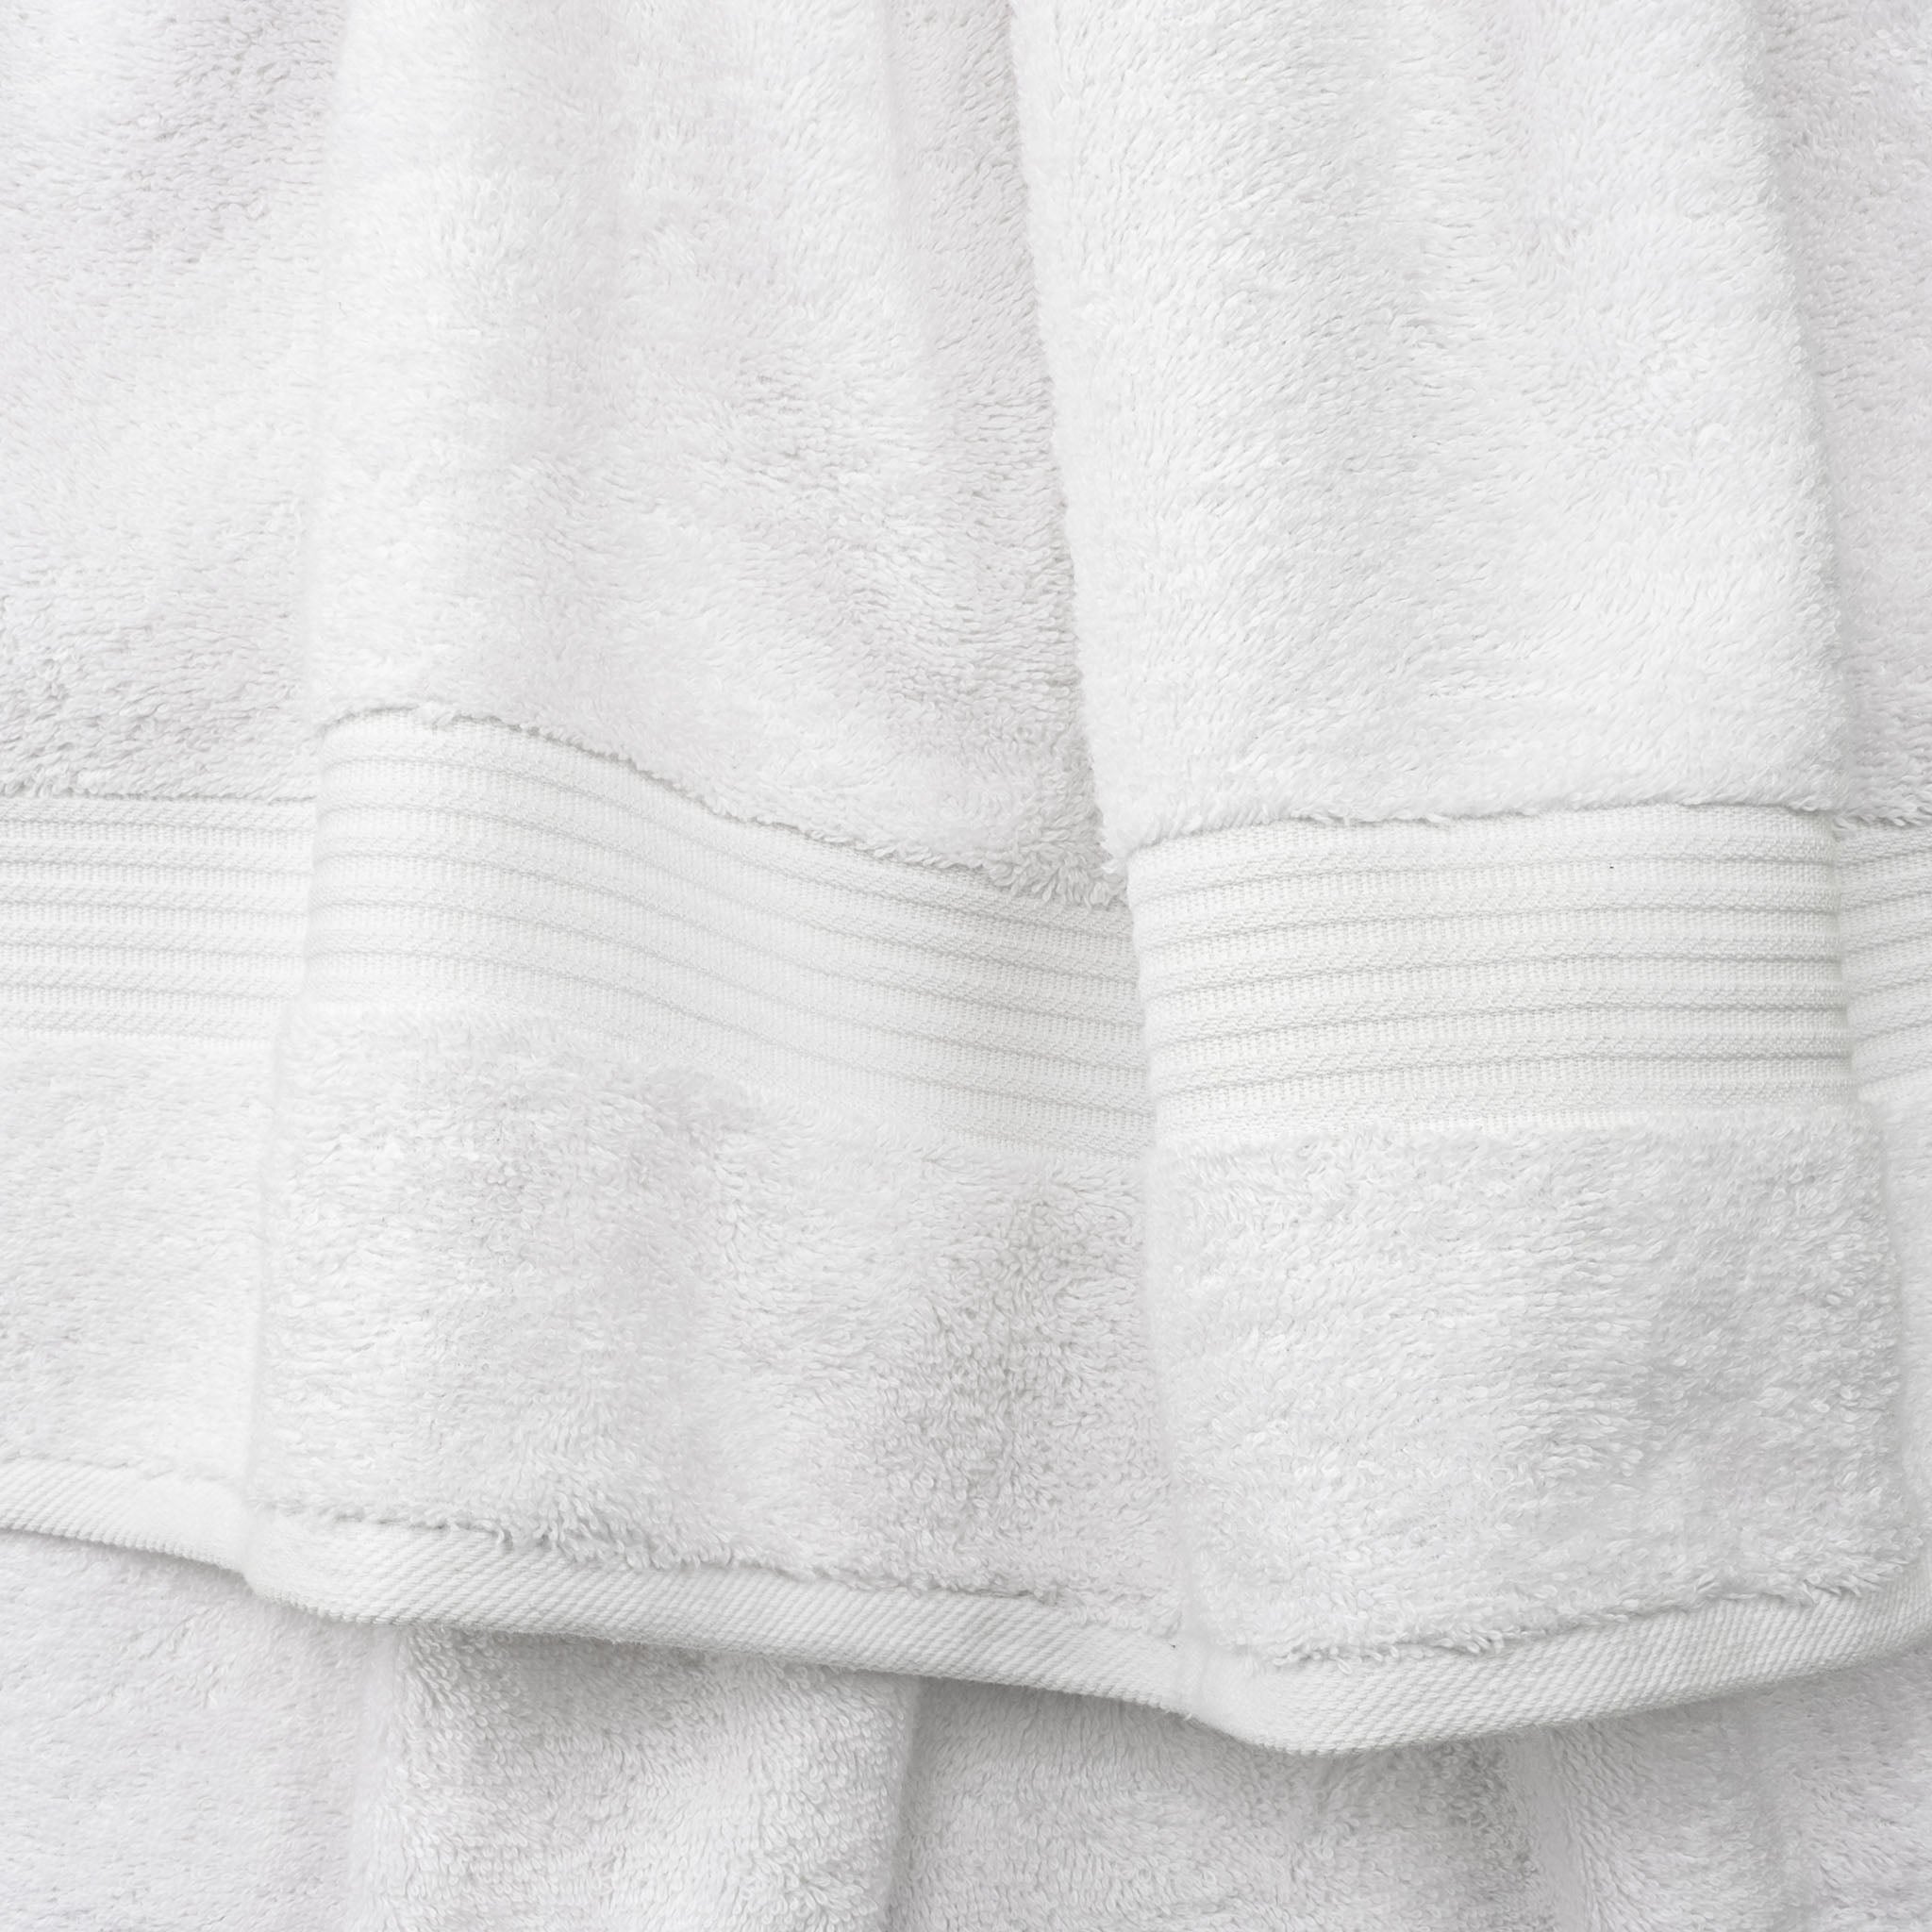 American Soft Linen Bekos 100% Cotton Turkish Towels, 4 Piece Bath Towel Set -turquoise-white-03